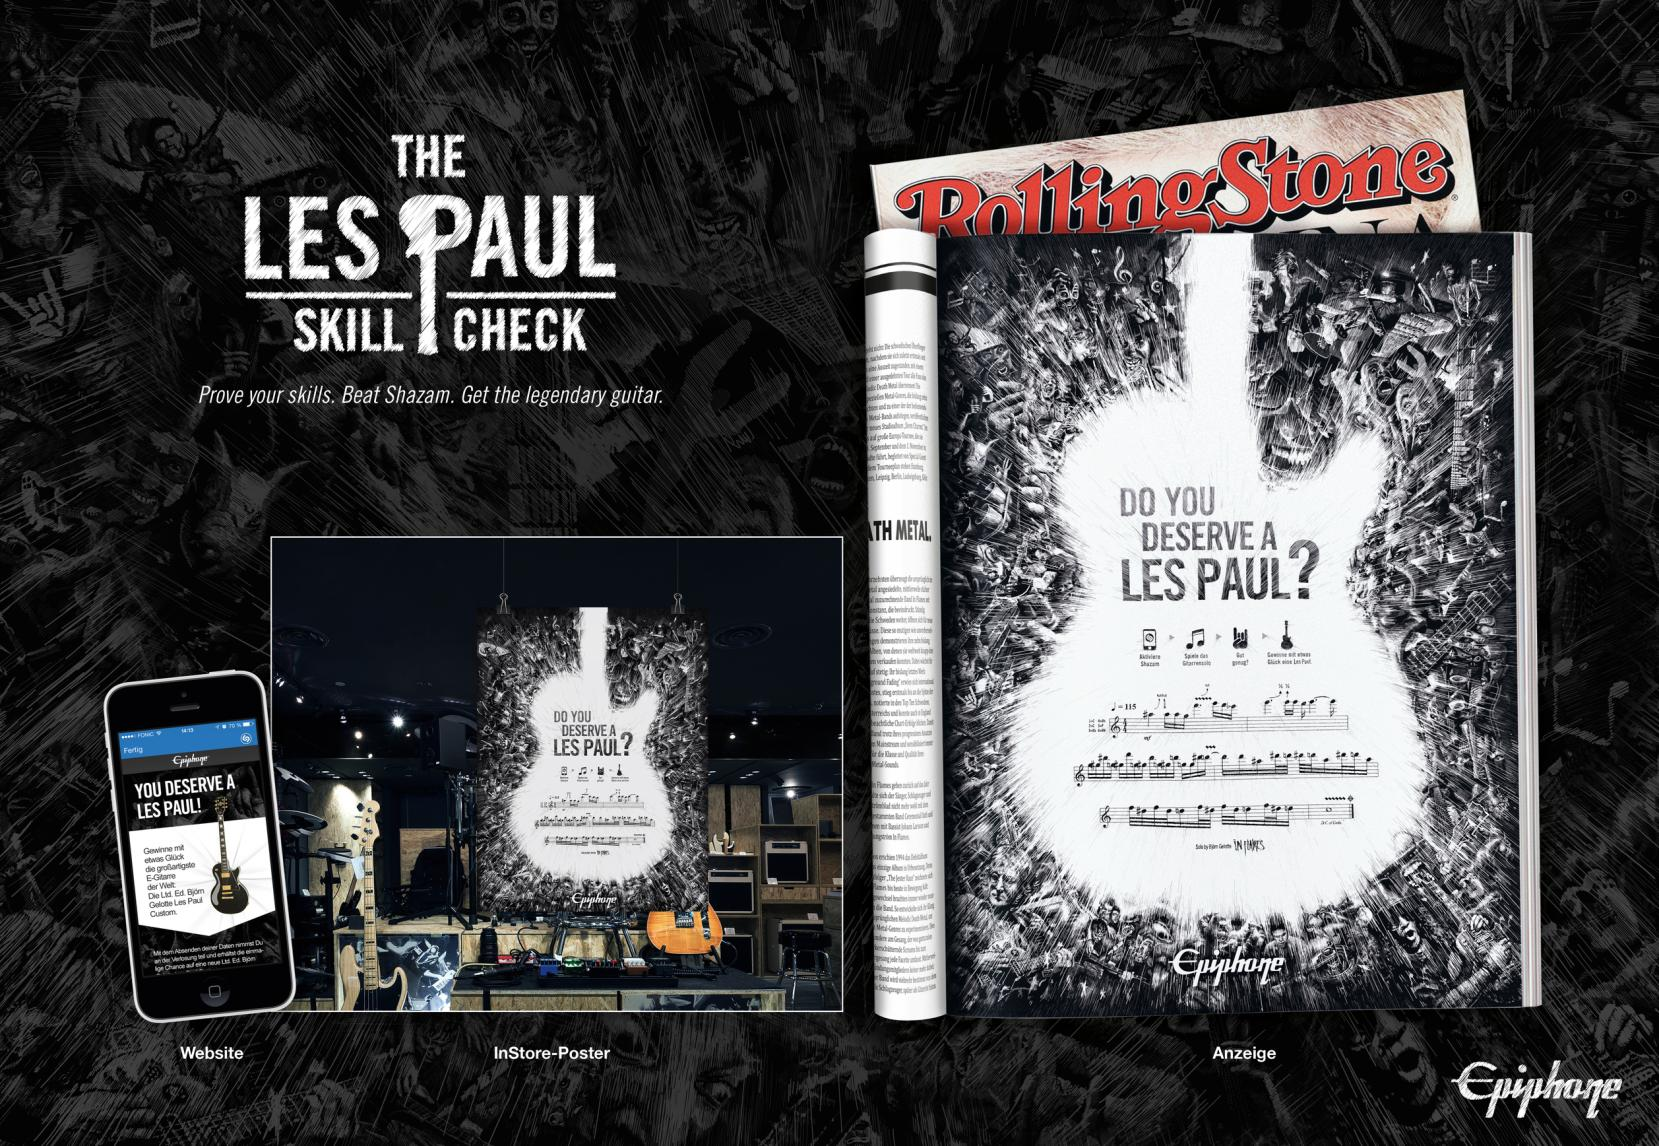 The Les Paul Skill Check Herausforderung Epiphone ist Tochterfirma und Marke des Gitarrenherstellers Gibson und eine der weltweit führenden Manufakturen für Premium-Gitarren.